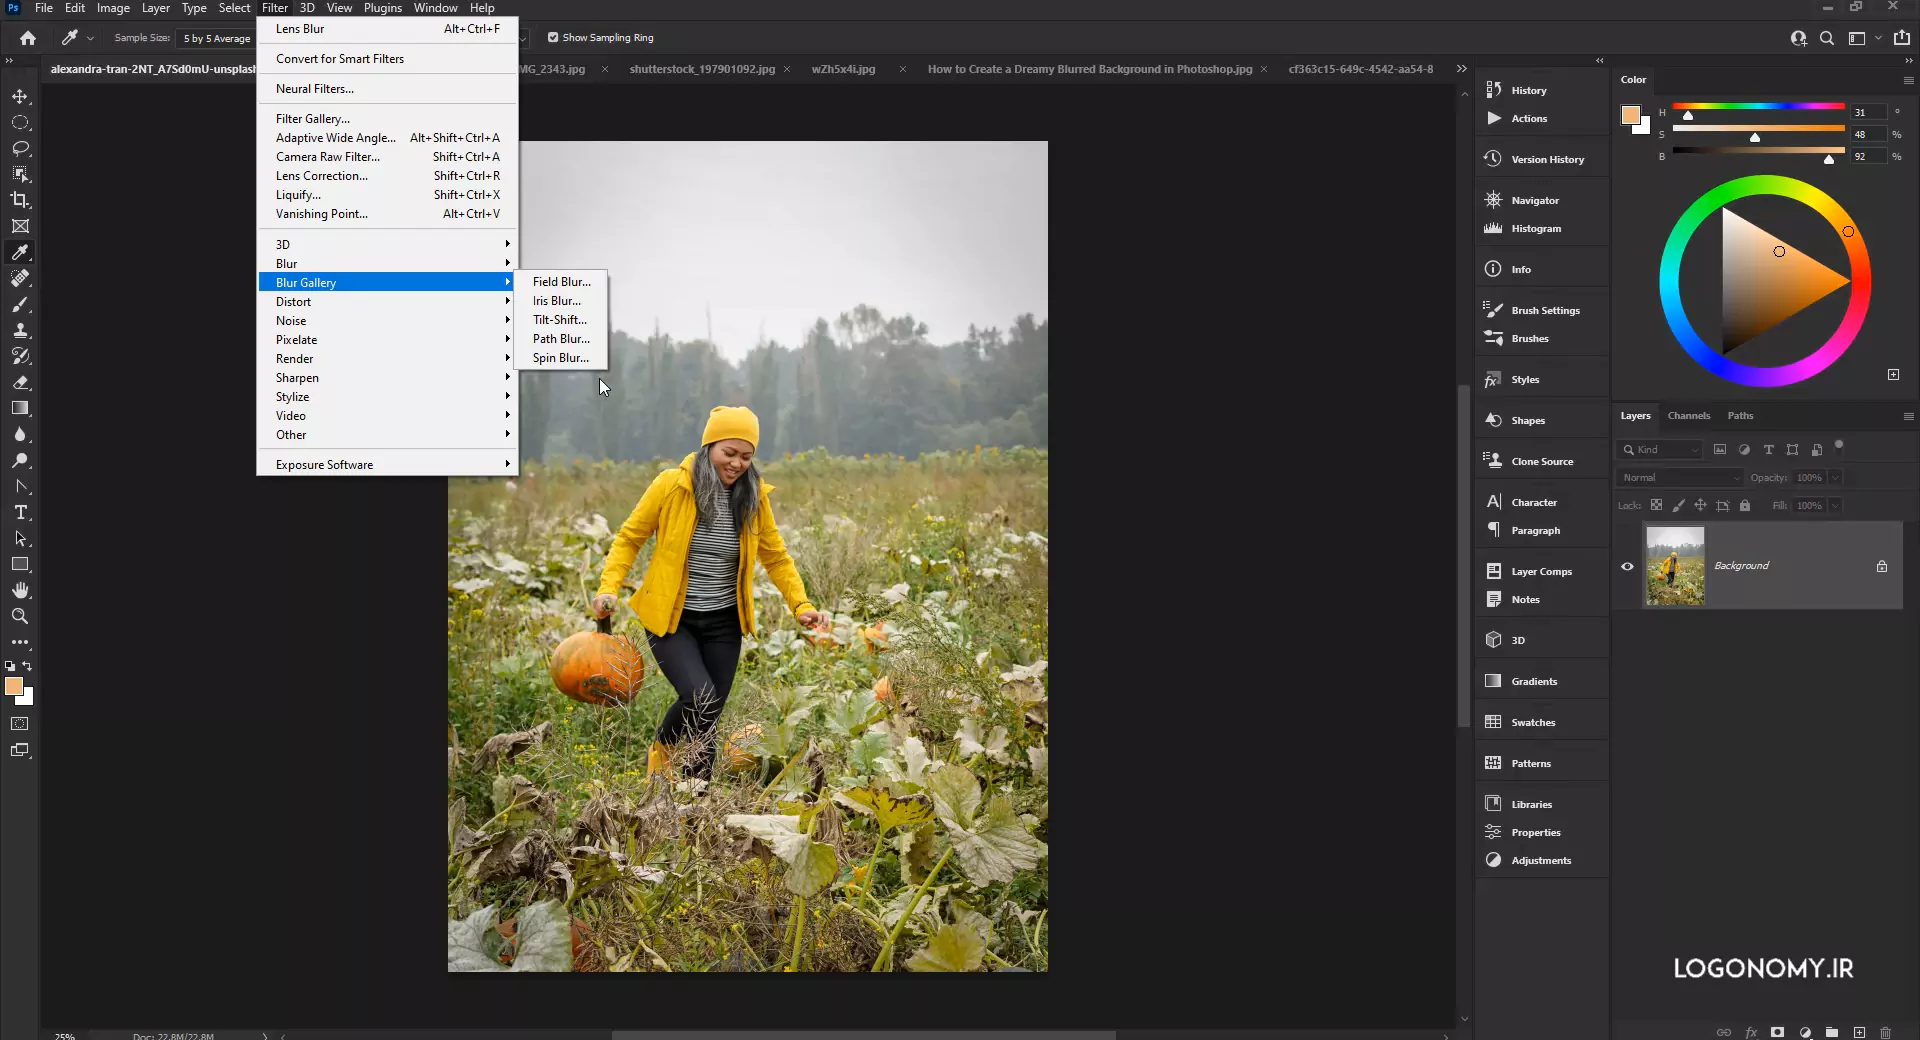 آشنایی با فیلترهای بلر گالری (Blur Gallery) در برنامه فتوشاپ Photoshop